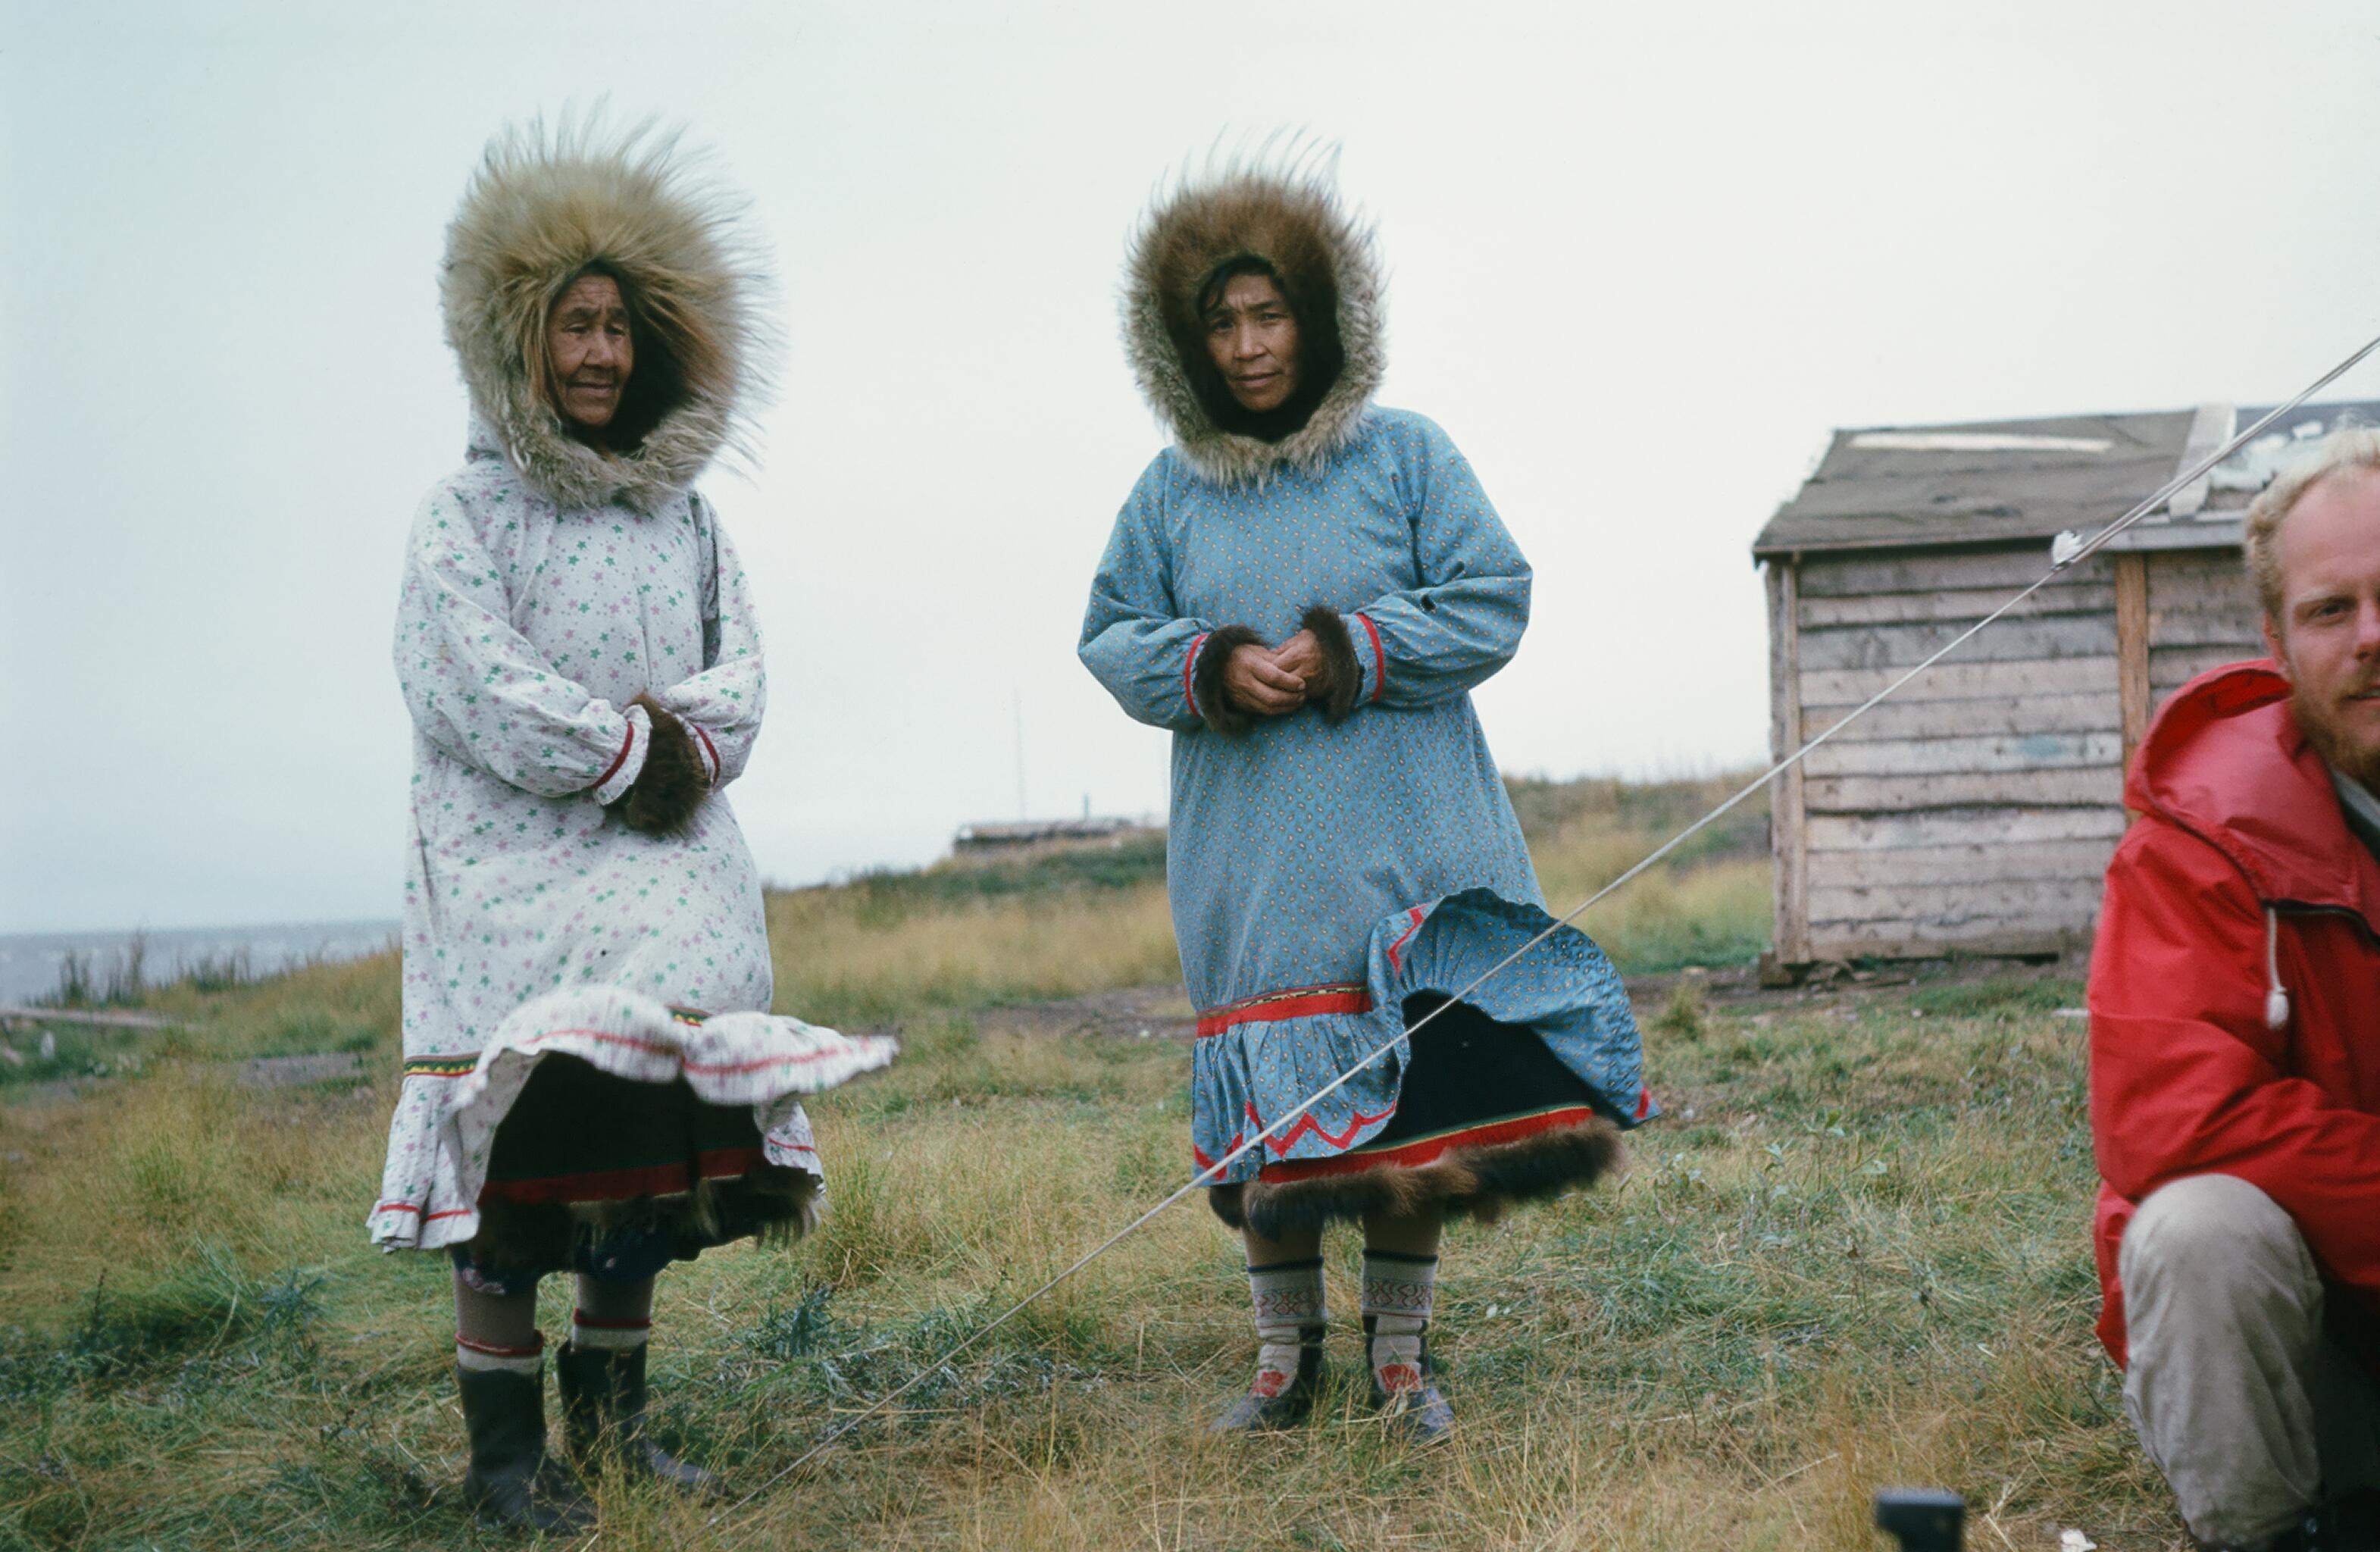 Eskimos welcomed us at Tuktoyaktuk at the Arctic Ocean